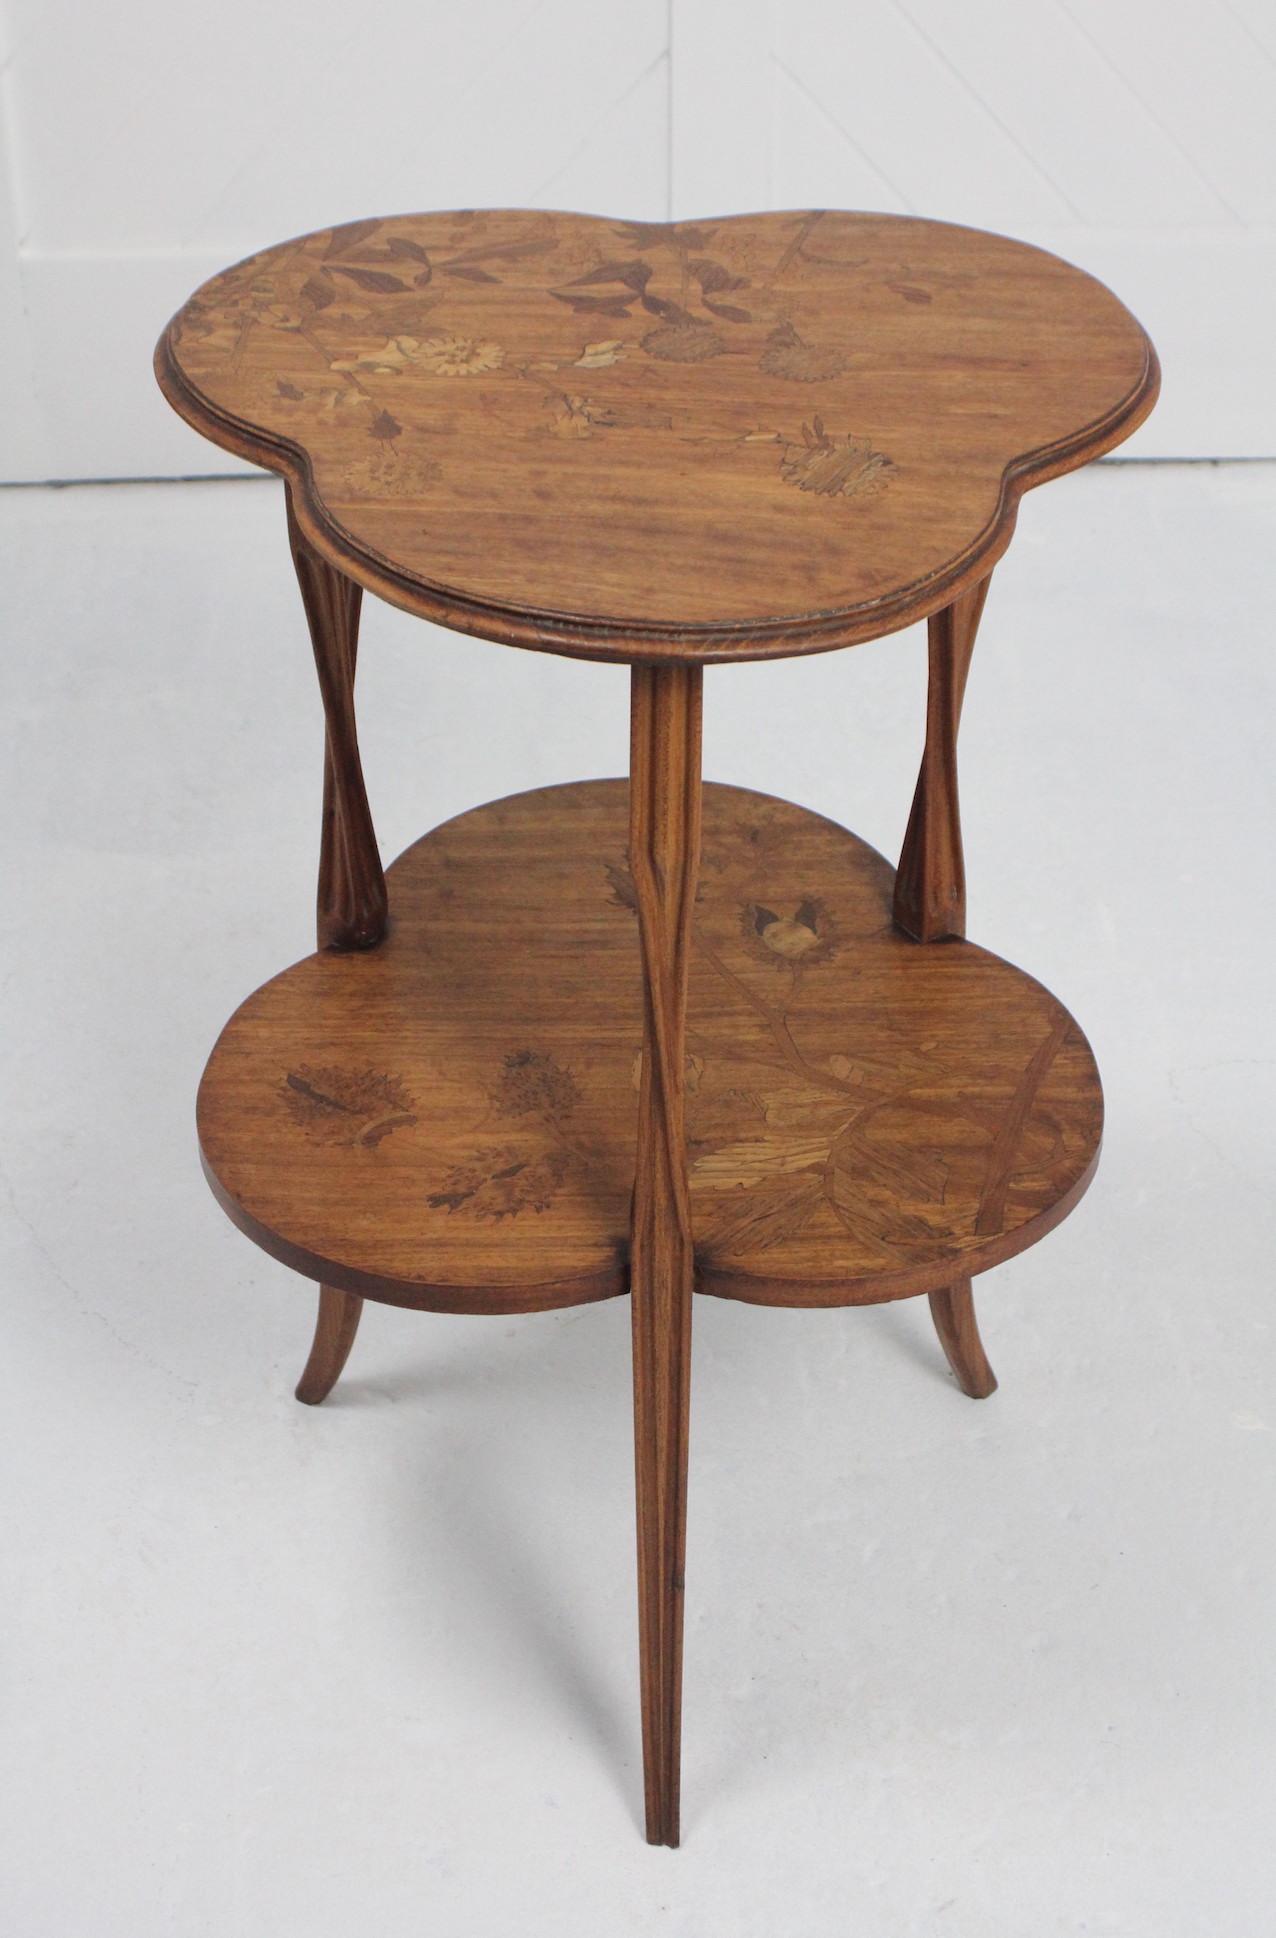 Oak Art Nouveau Salon Table by Louis Majorelle